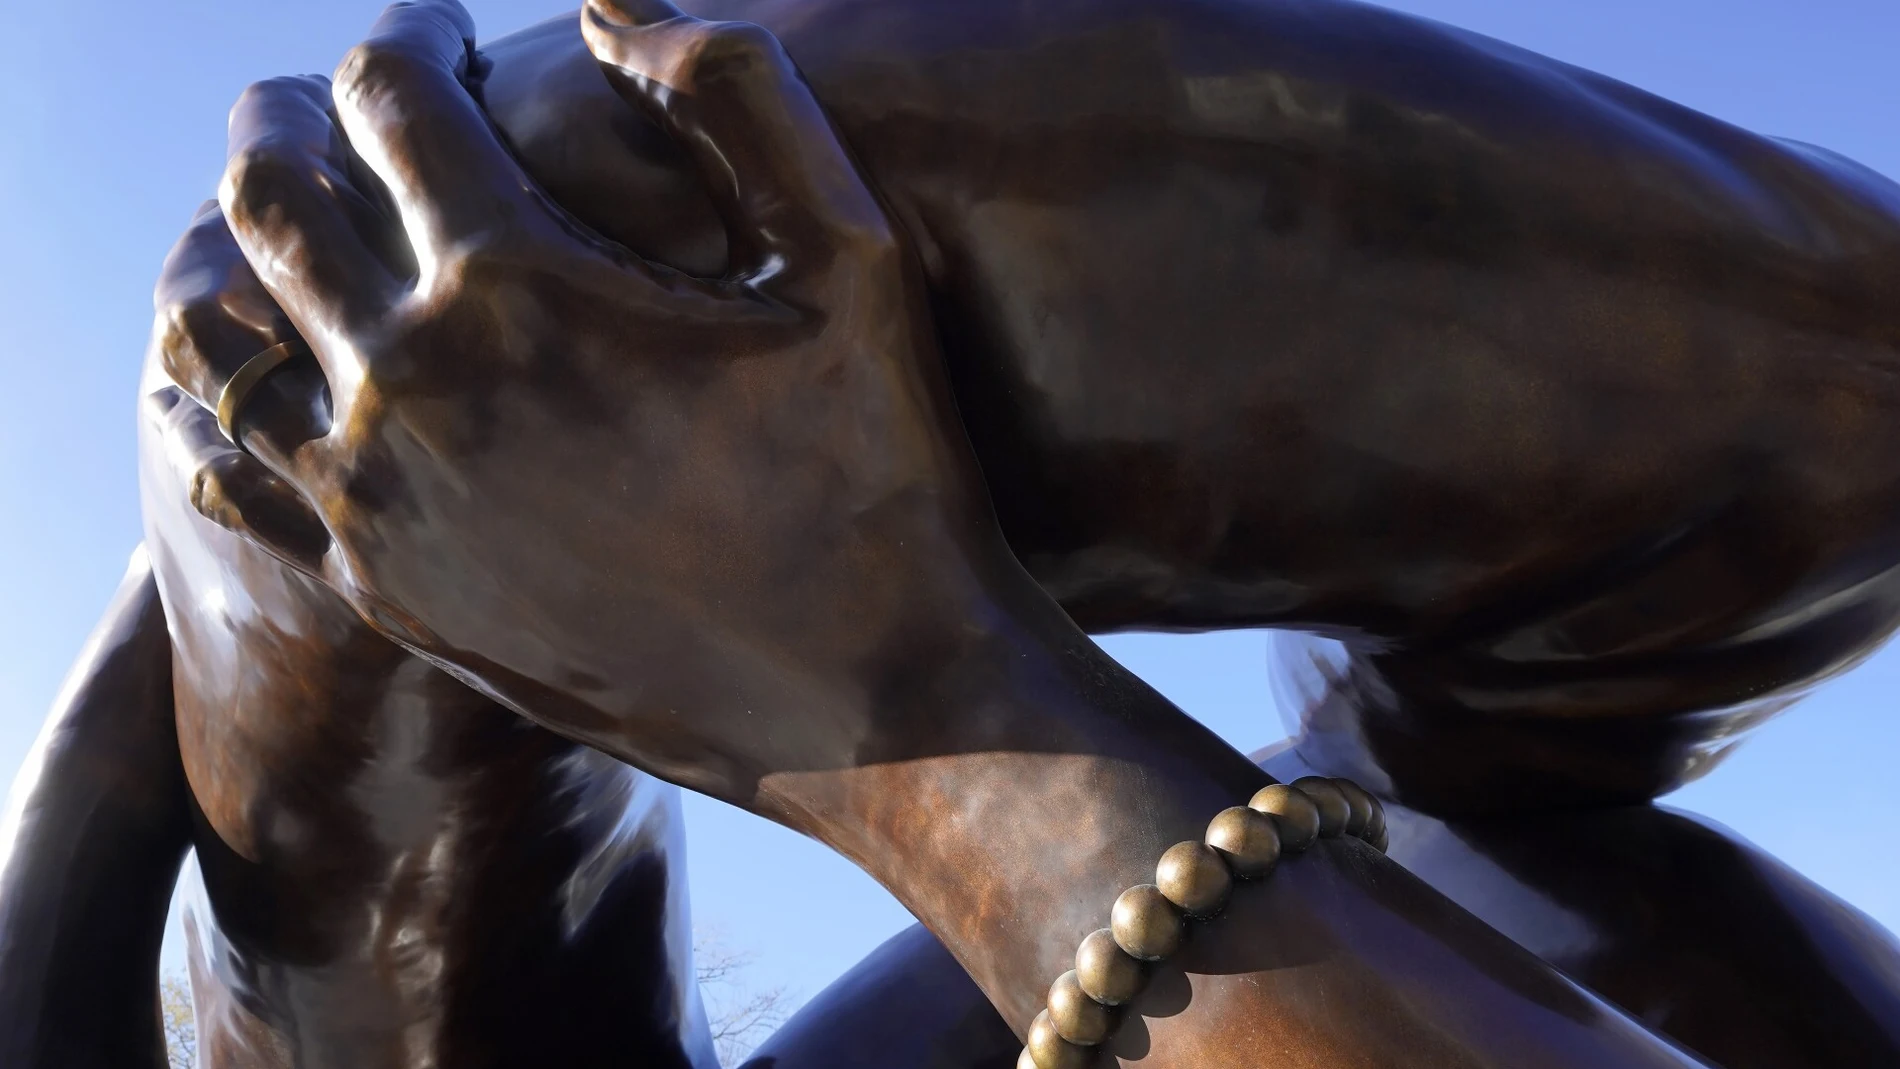 Imagen de "The Embrce", la estatua en honor a Luther King